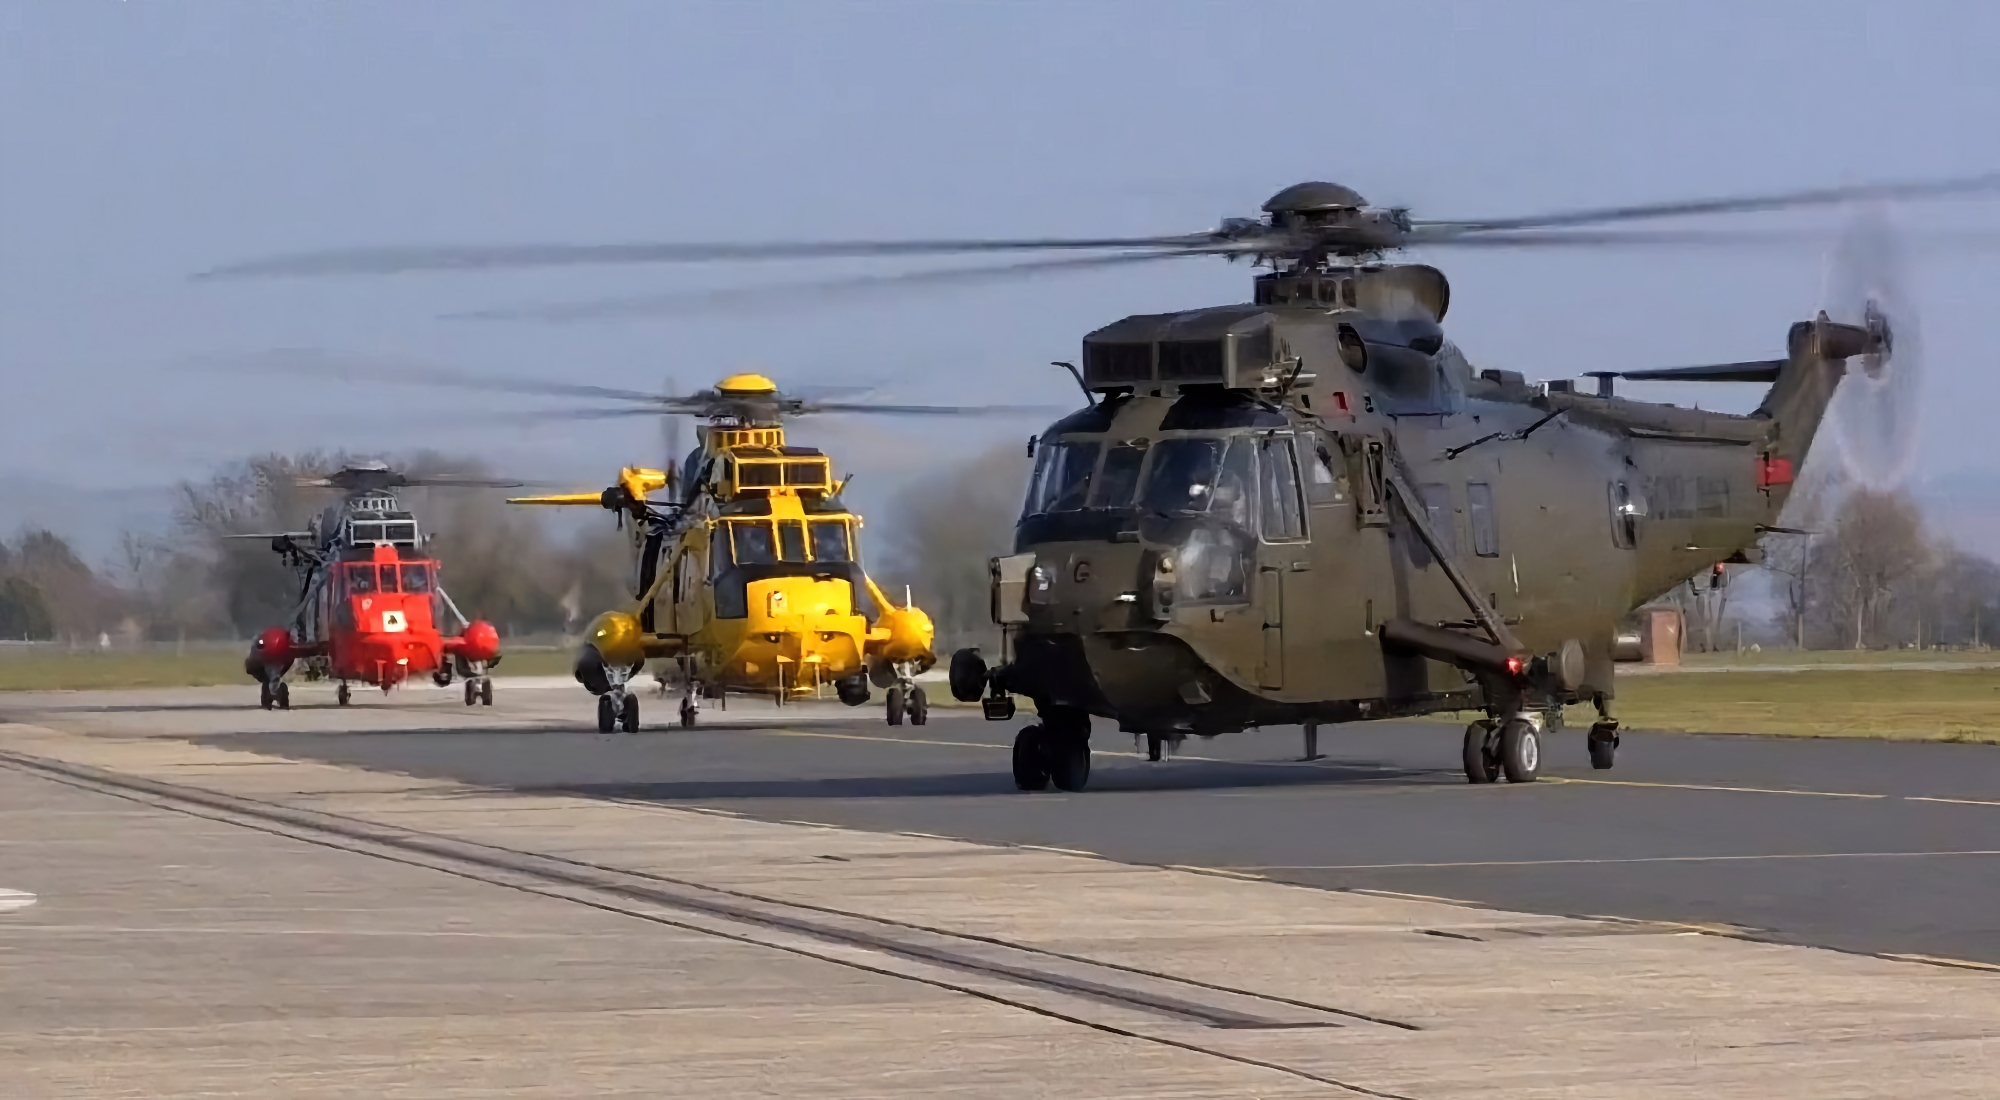 Ukraina otrzymuje brytyjski śmigłowiec Sikorsky S-61 Sea King do działań poszukiwawczych i ratowniczych